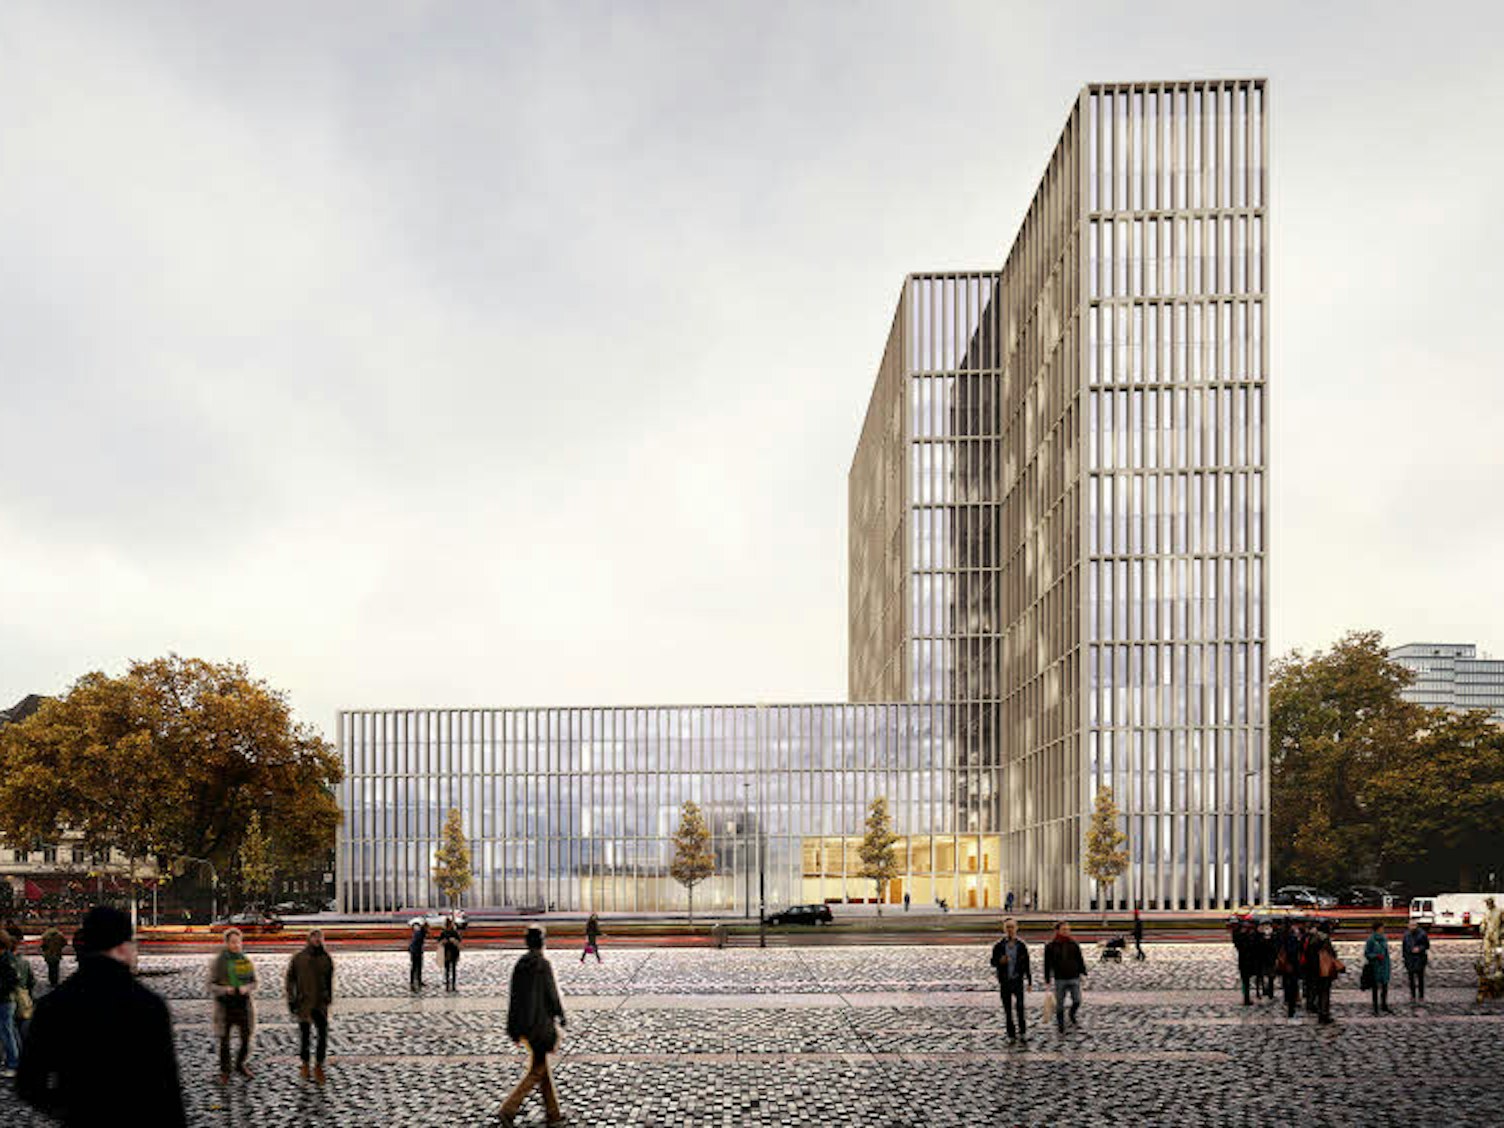 Zukunft: Die Aachener Architekten kadawittfeld wollen ein bis zu 73 Meter hohes Hochhaus realisieren. (Visualisierung: kadawittfeld)